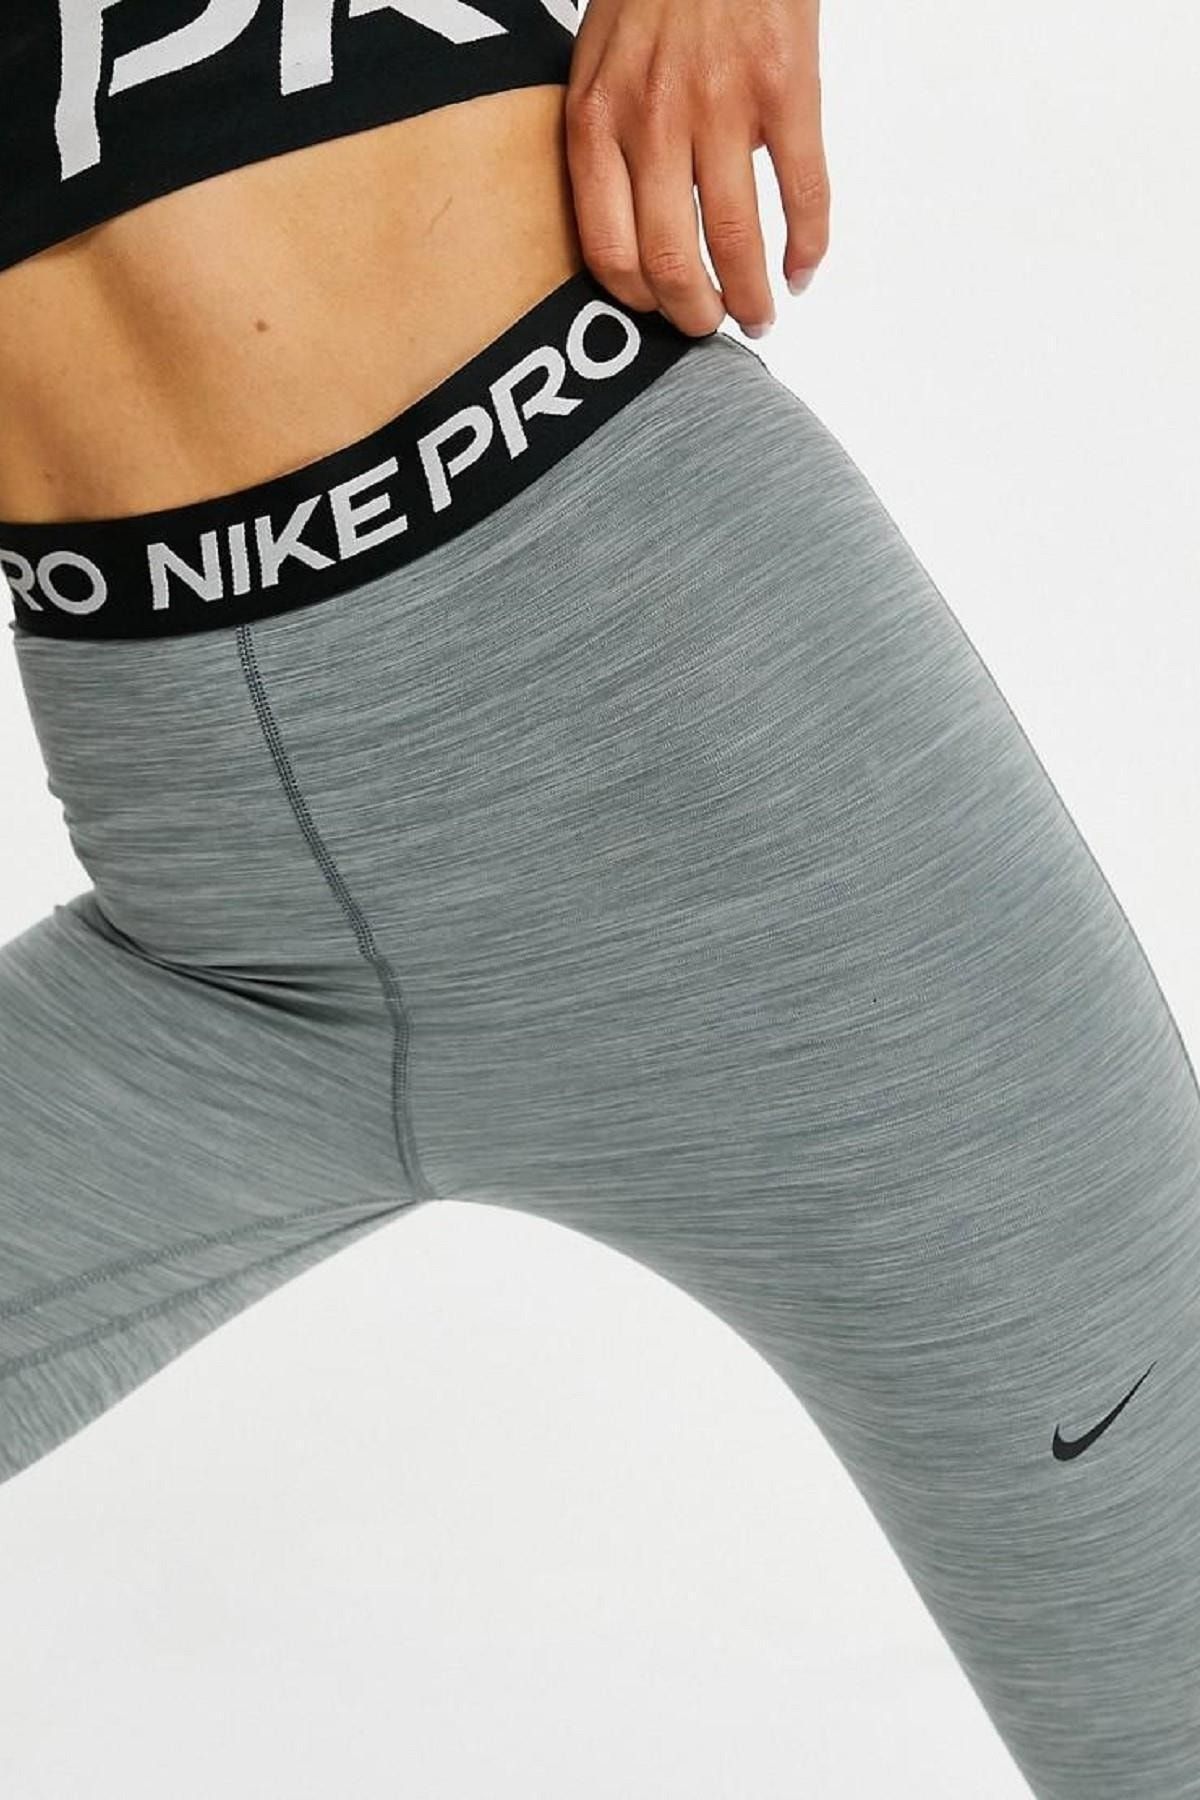 Nike Pro 365 High Rise 7/8 Leggings High Waisted Gray Leggings - Trendyol